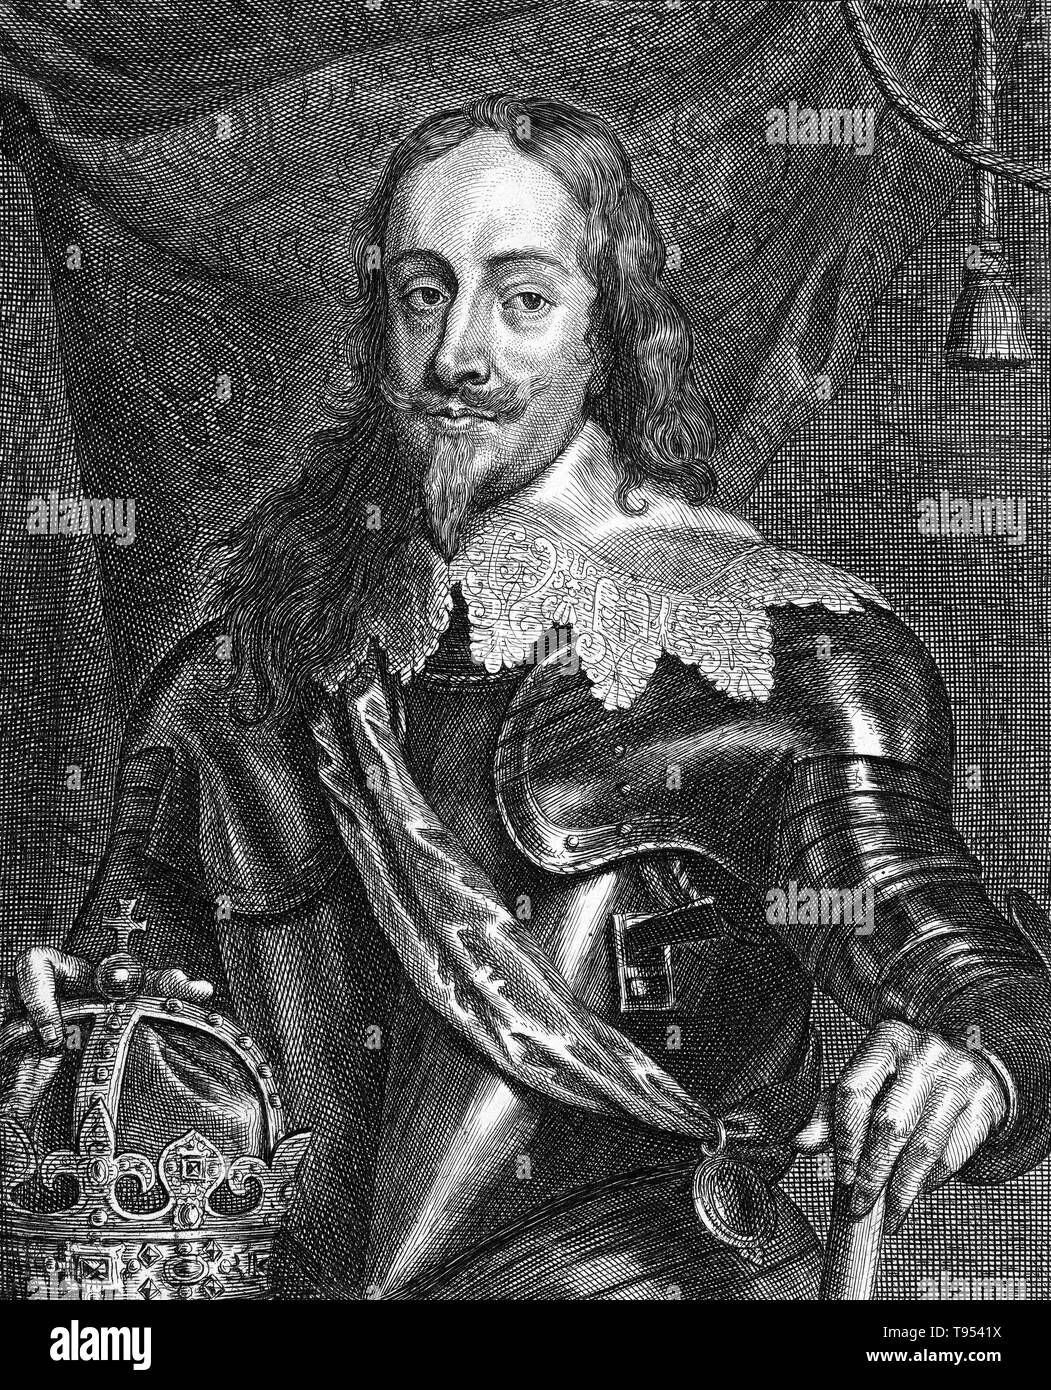 Charles I (19 novembre 1600 - 30 gennaio 1649) è stato monarca dei tre regni di Inghilterra, in Scozia e in Irlanda dal 27 marzo 1625 fino alla sua esecuzione in 1649. Carlo era il secondo figlio del re Giacomo VI di Scozia, ma dopo che il suo padre ha ereditato il trono Inglese nel 1603, si trasferì in Inghilterra, dove ha trascorso la maggior parte del resto della sua vita. Dopo la sua successione, Charles oggetto di contesa con il Parlamento dell'Inghilterra, che ha cercato di frenare la sua prerogativa regale. Foto Stock